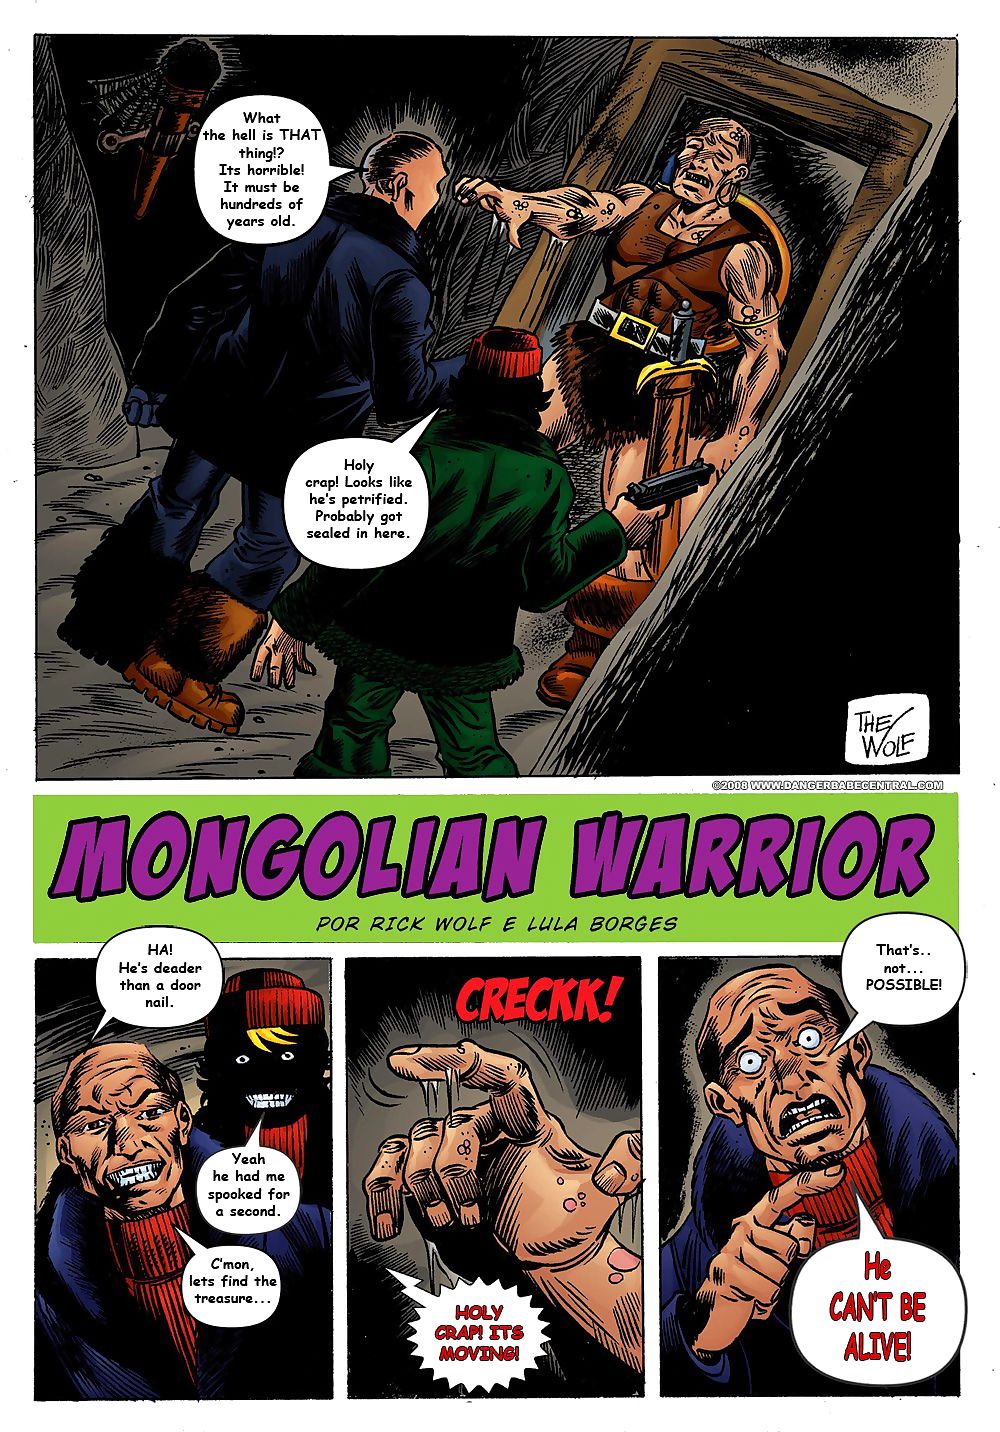 特丽娜 琼斯 蒙古 战士 page 1